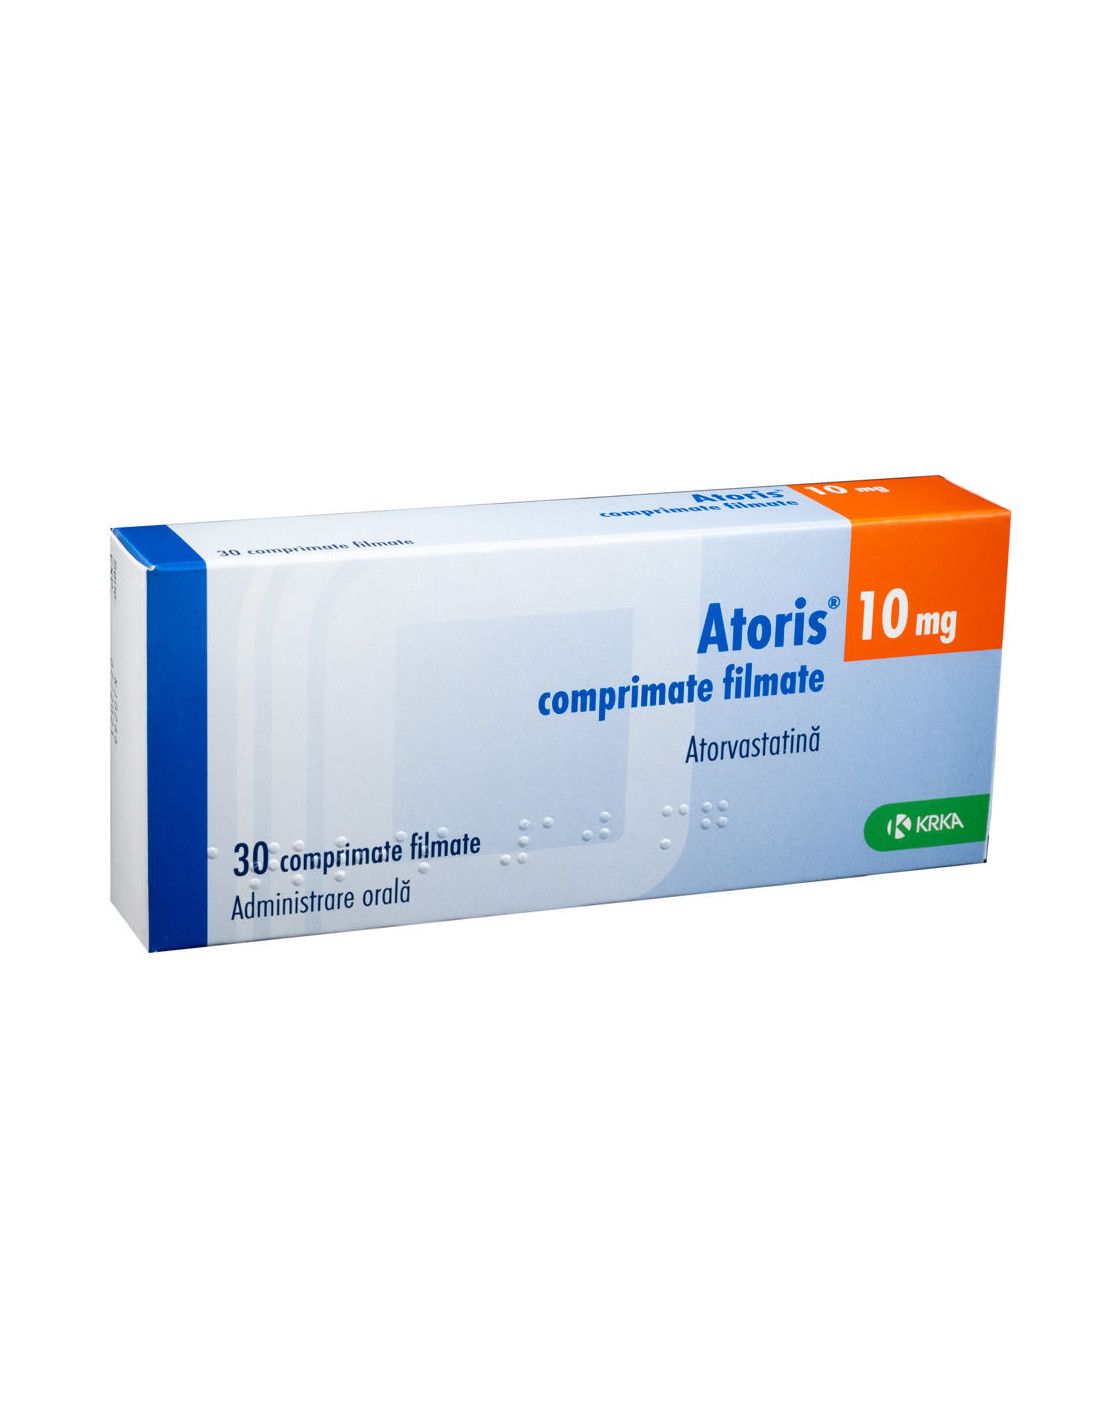 Atorvastatina: un medicament utilizat pentru scăderea colesterolului - Medic Info